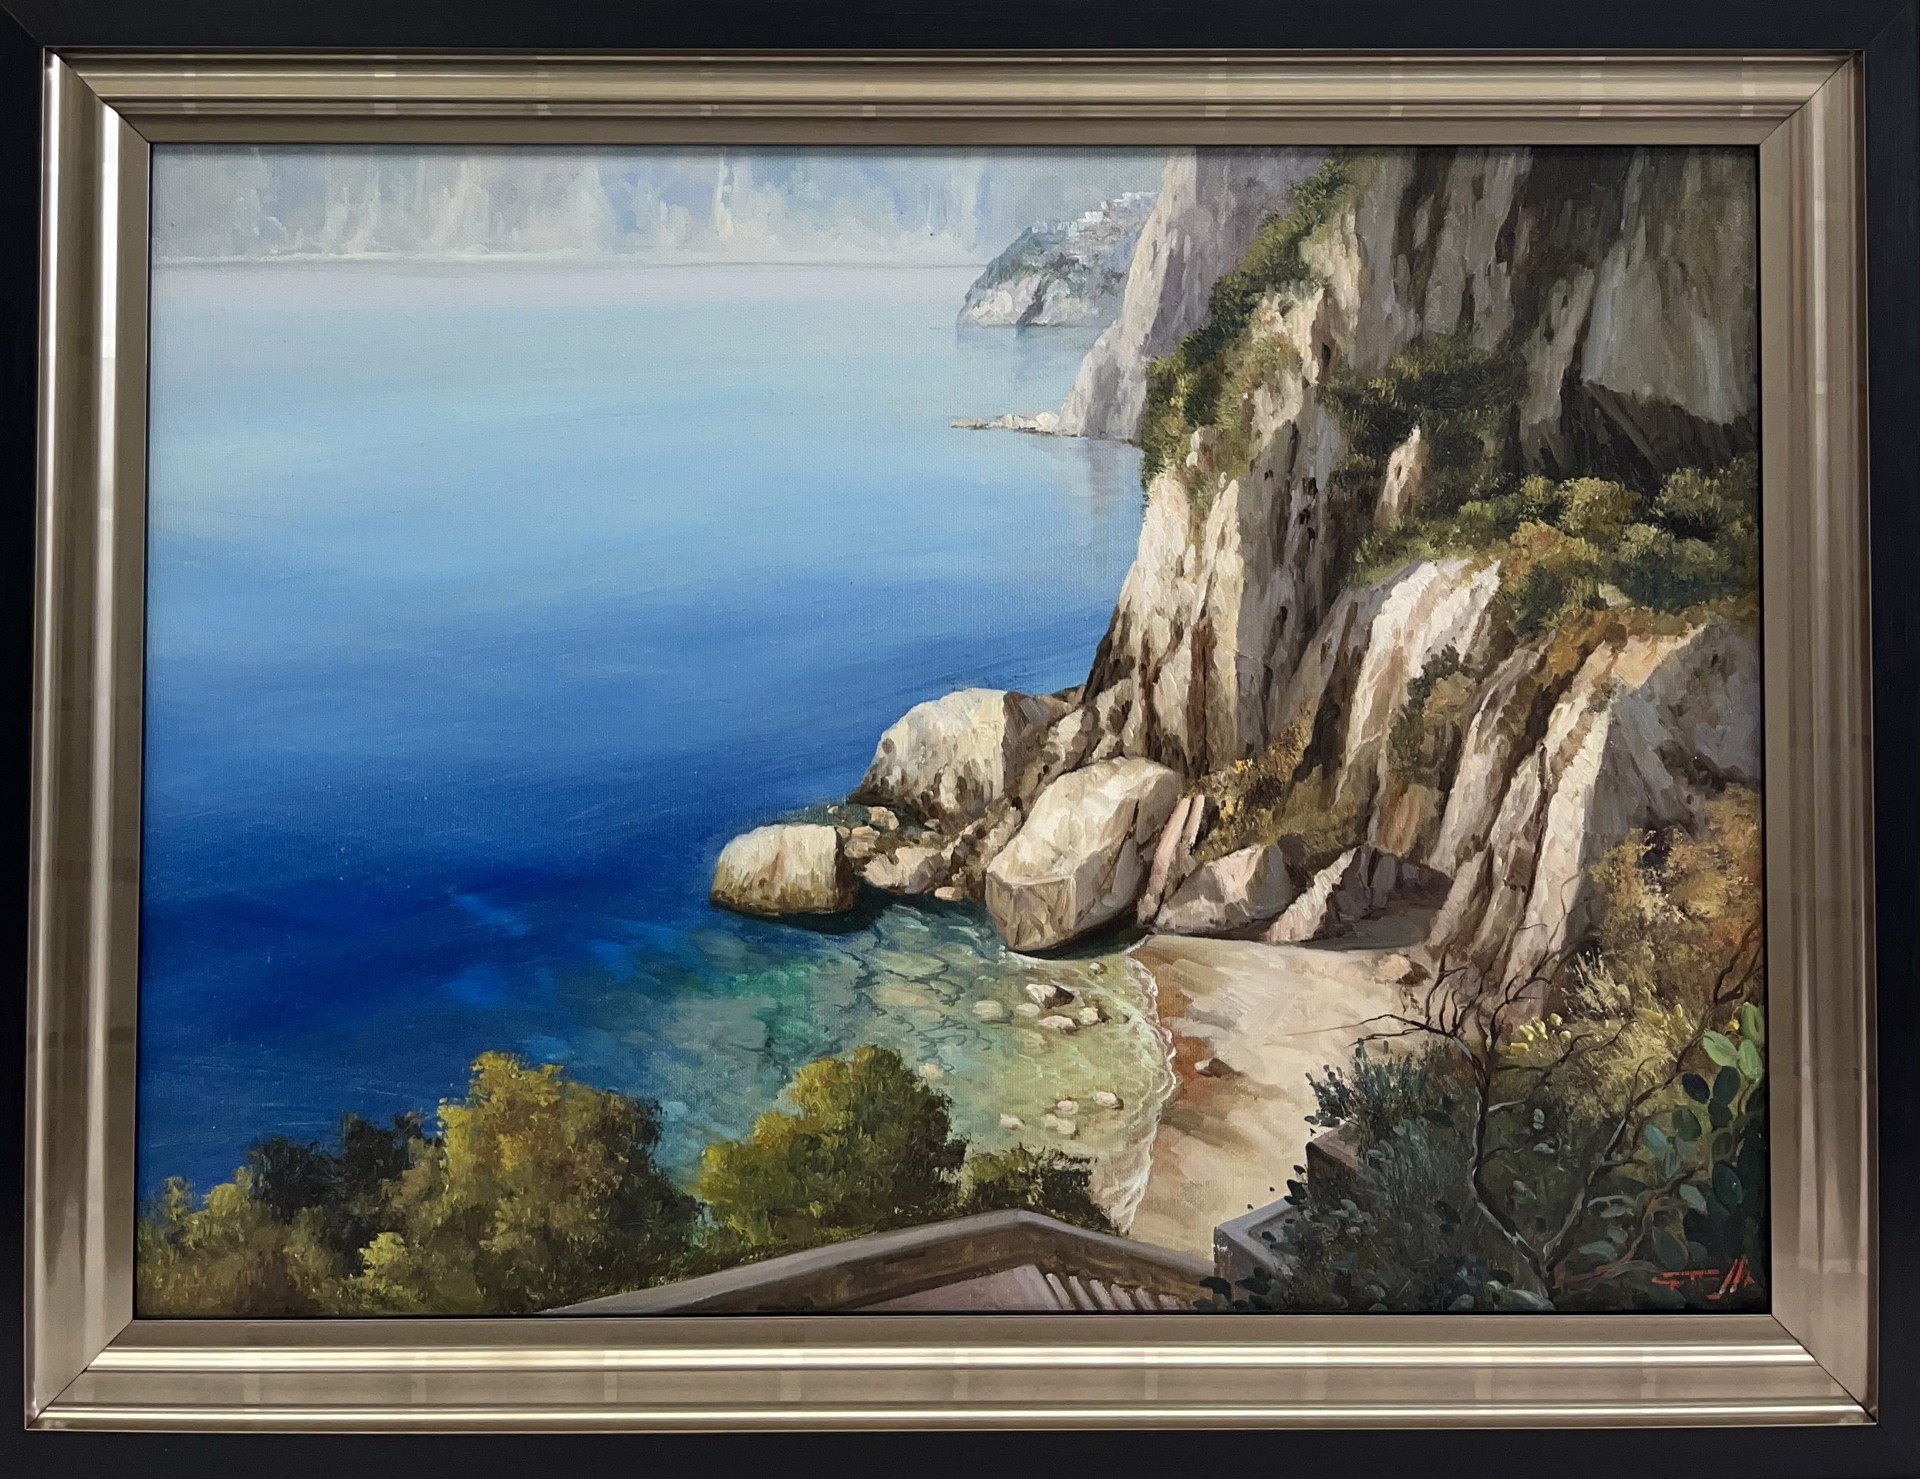 Amalfi Coast by Giuseppe Torella